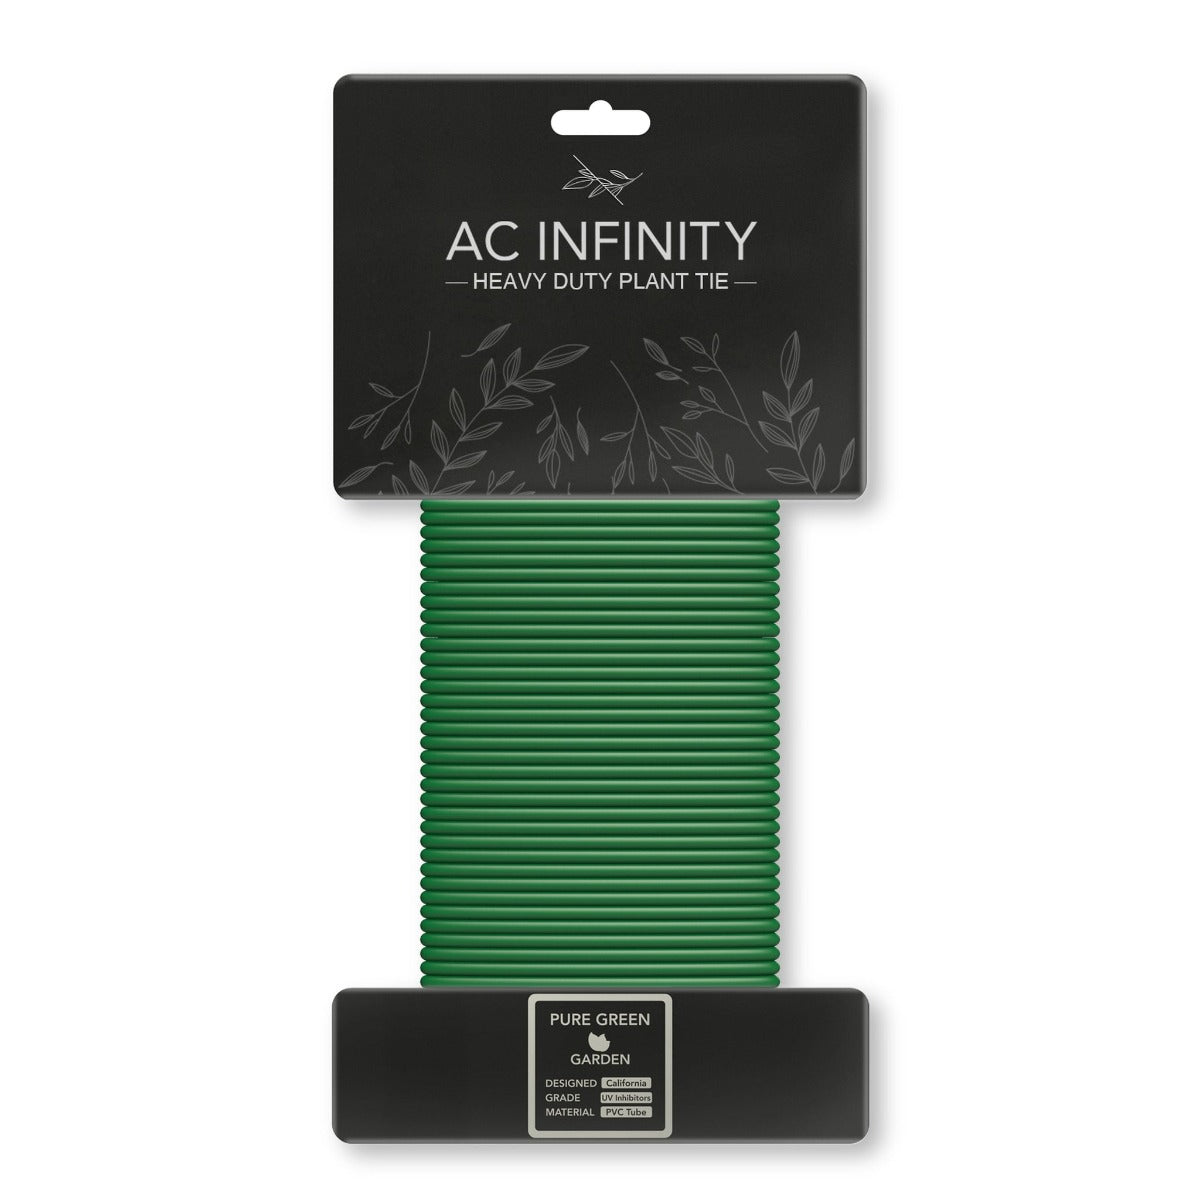 Heavy Duty Plant tie AC Infinity